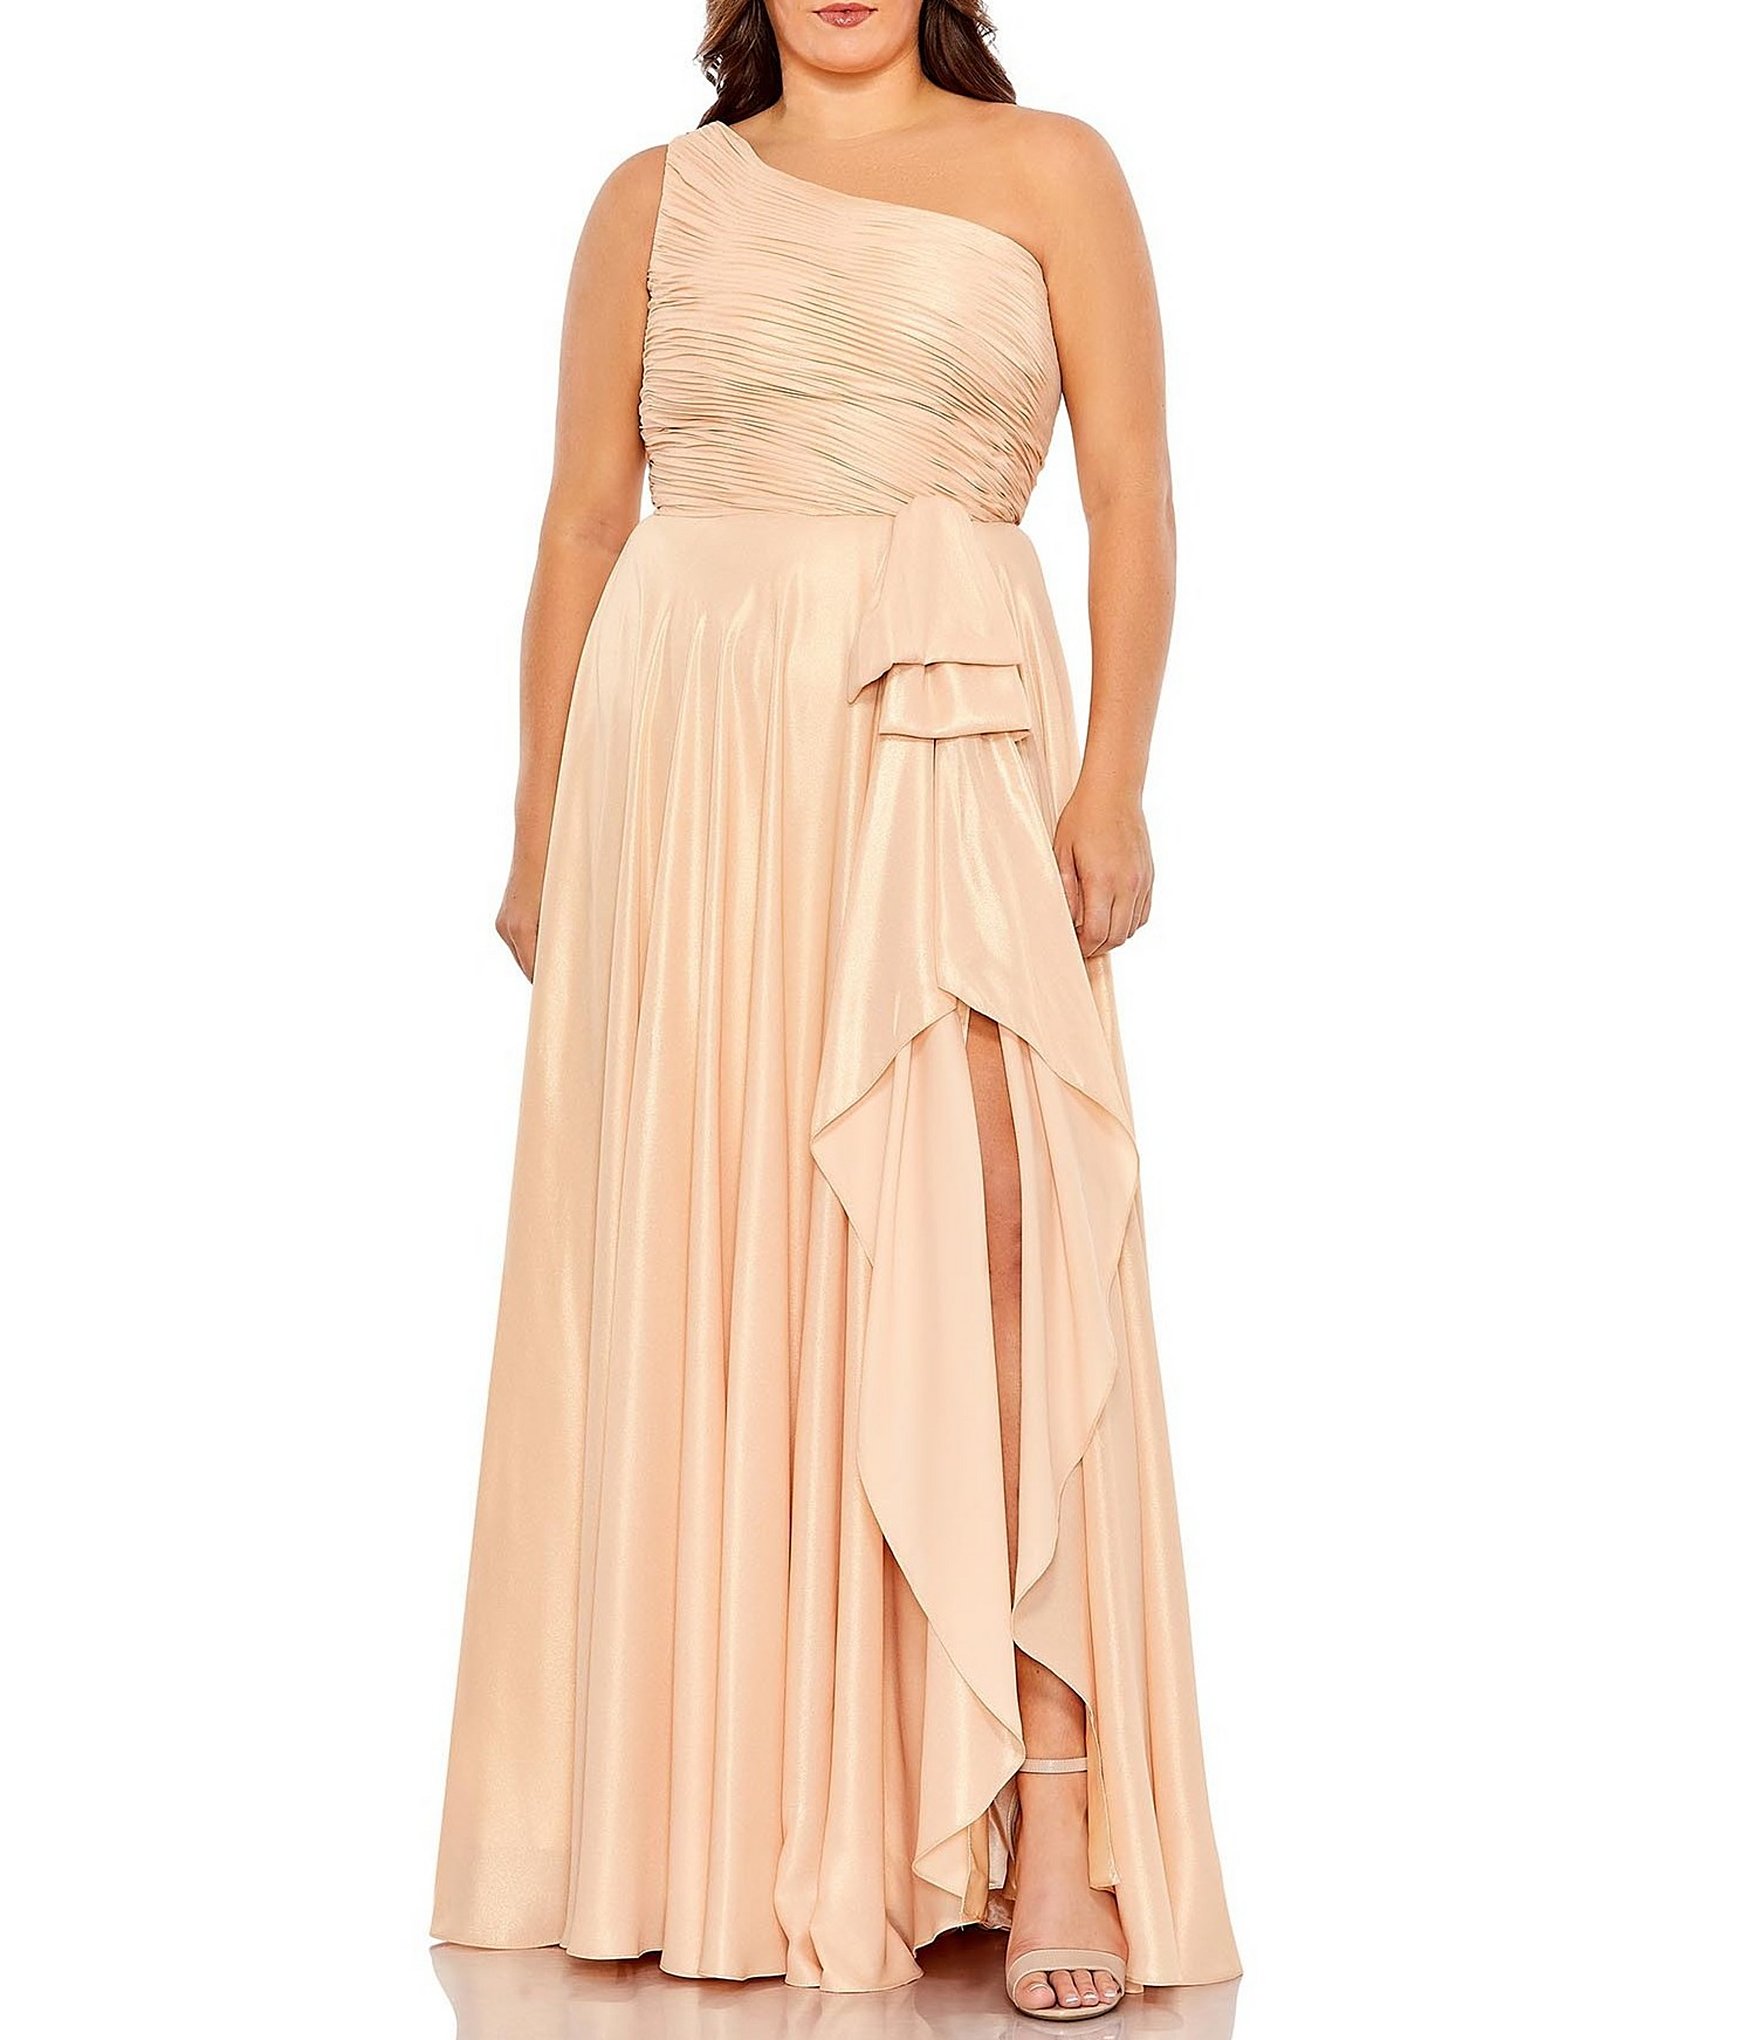 Gold Plus-Size Dresses & Gowns | Dillard's